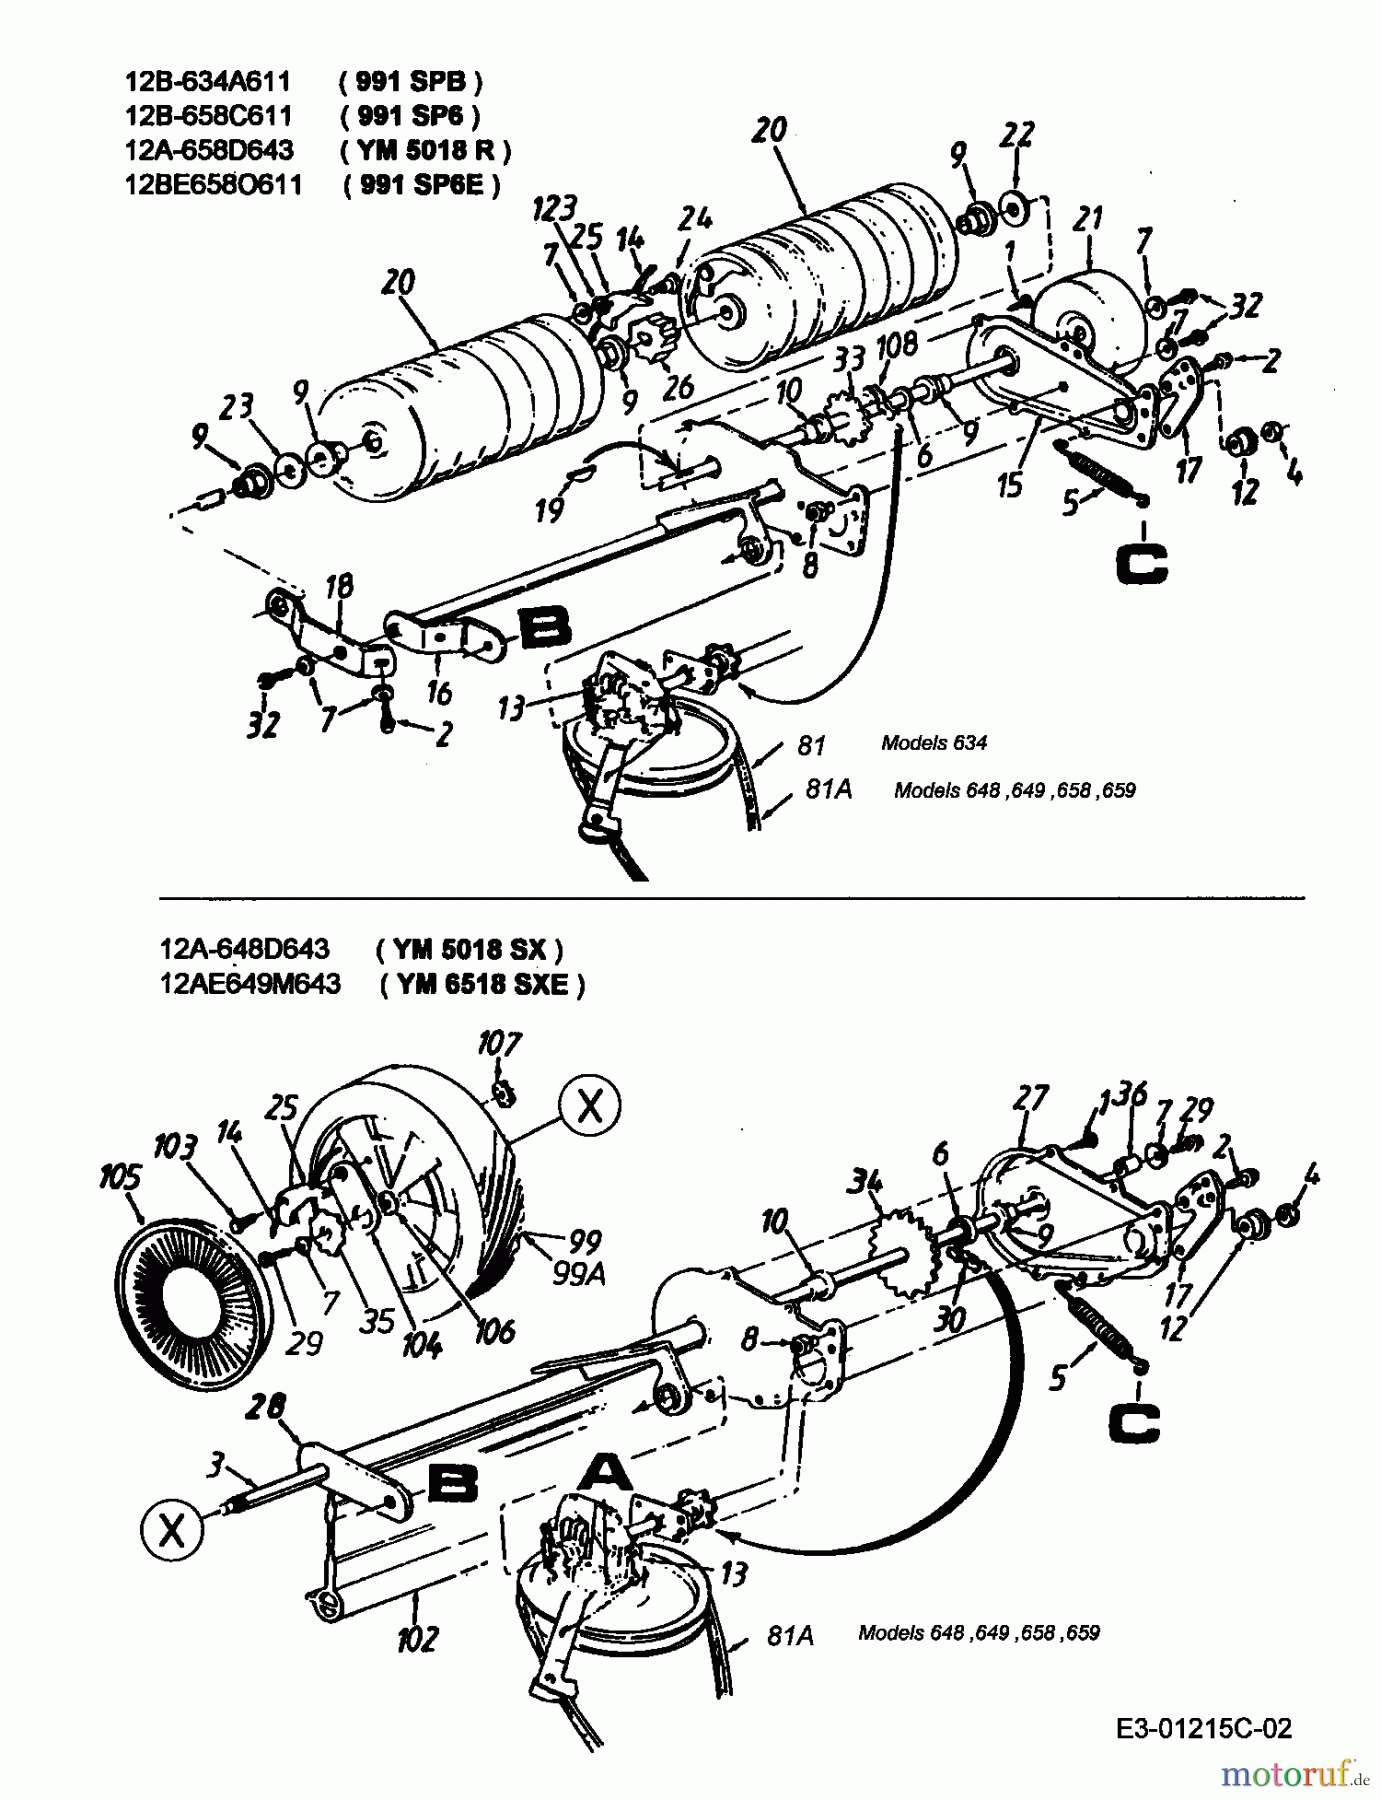  Lawnflite Petrol mower self propelled 991 SP 6 12B-658C611  (1999) Gearbox, Rollers, Wheels